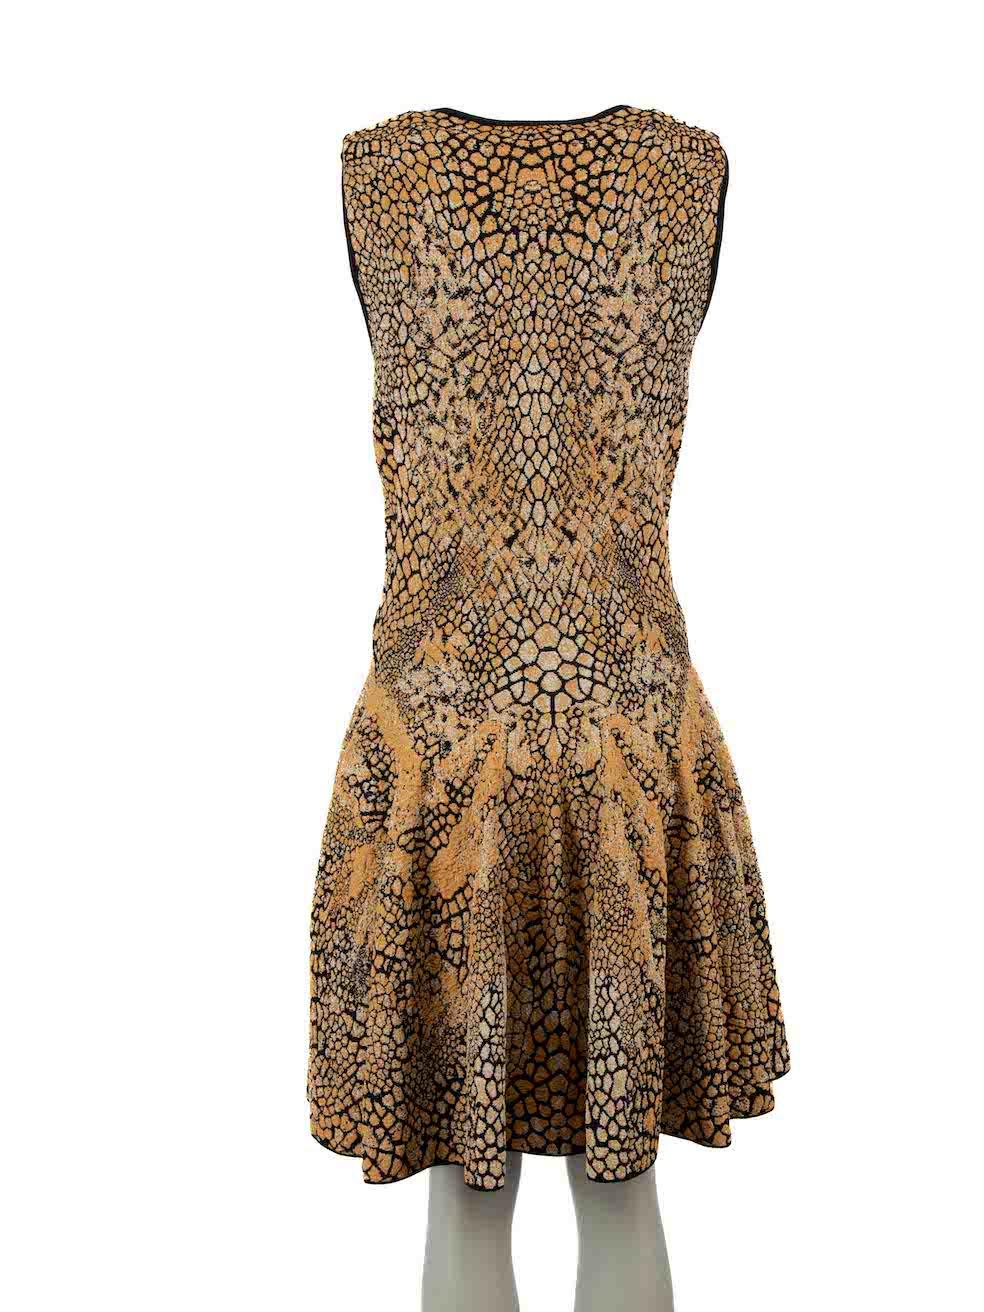 Brown Alexander McQueen Leopard Print Knit Dress Size M